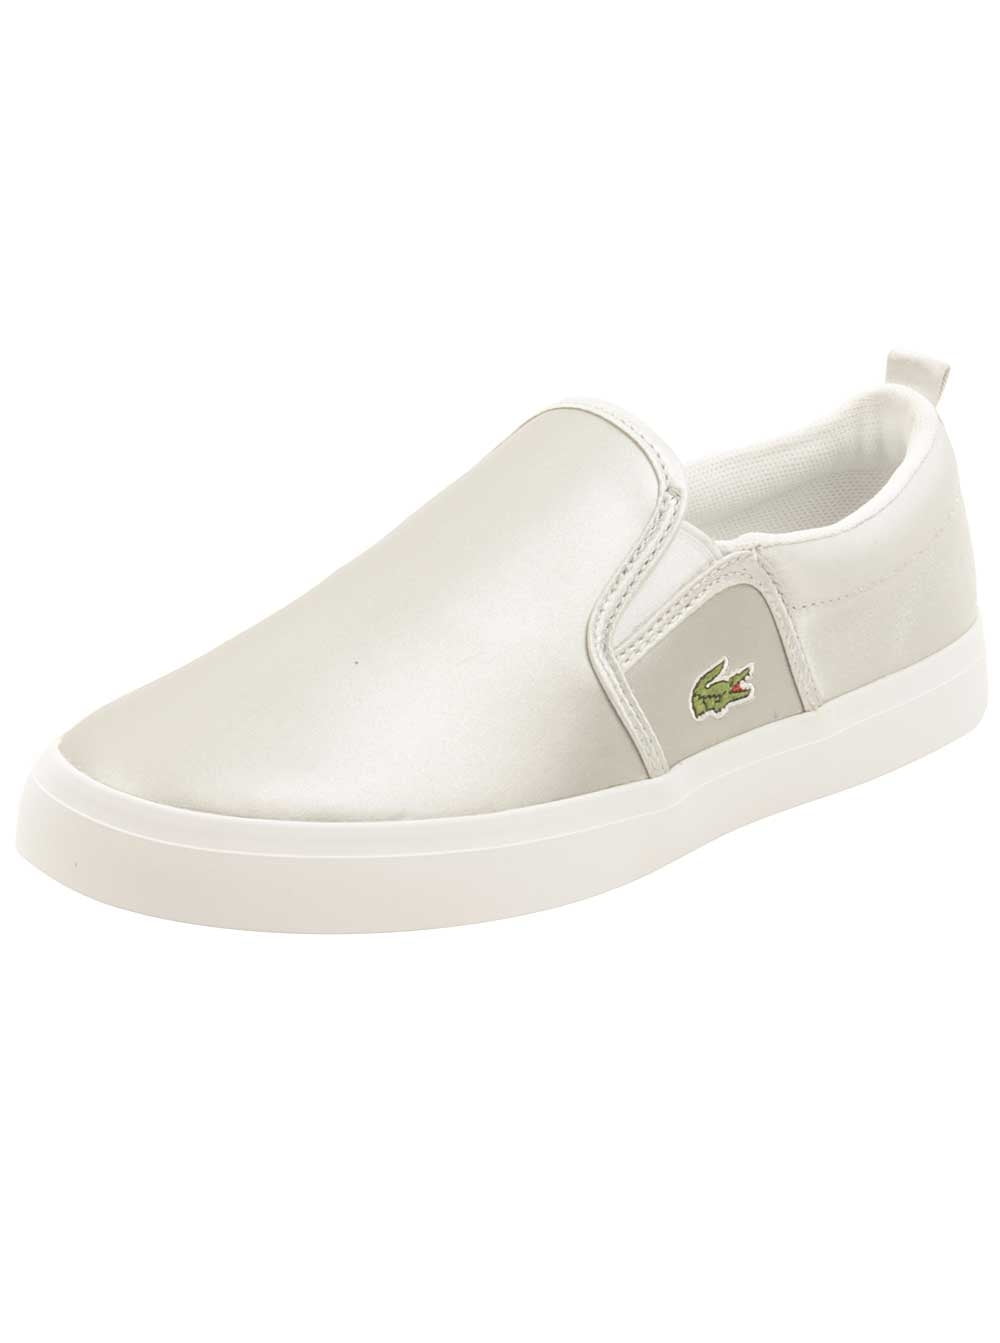 Lacoste Gazon 218 1 Caj Sneakers Silver White New 